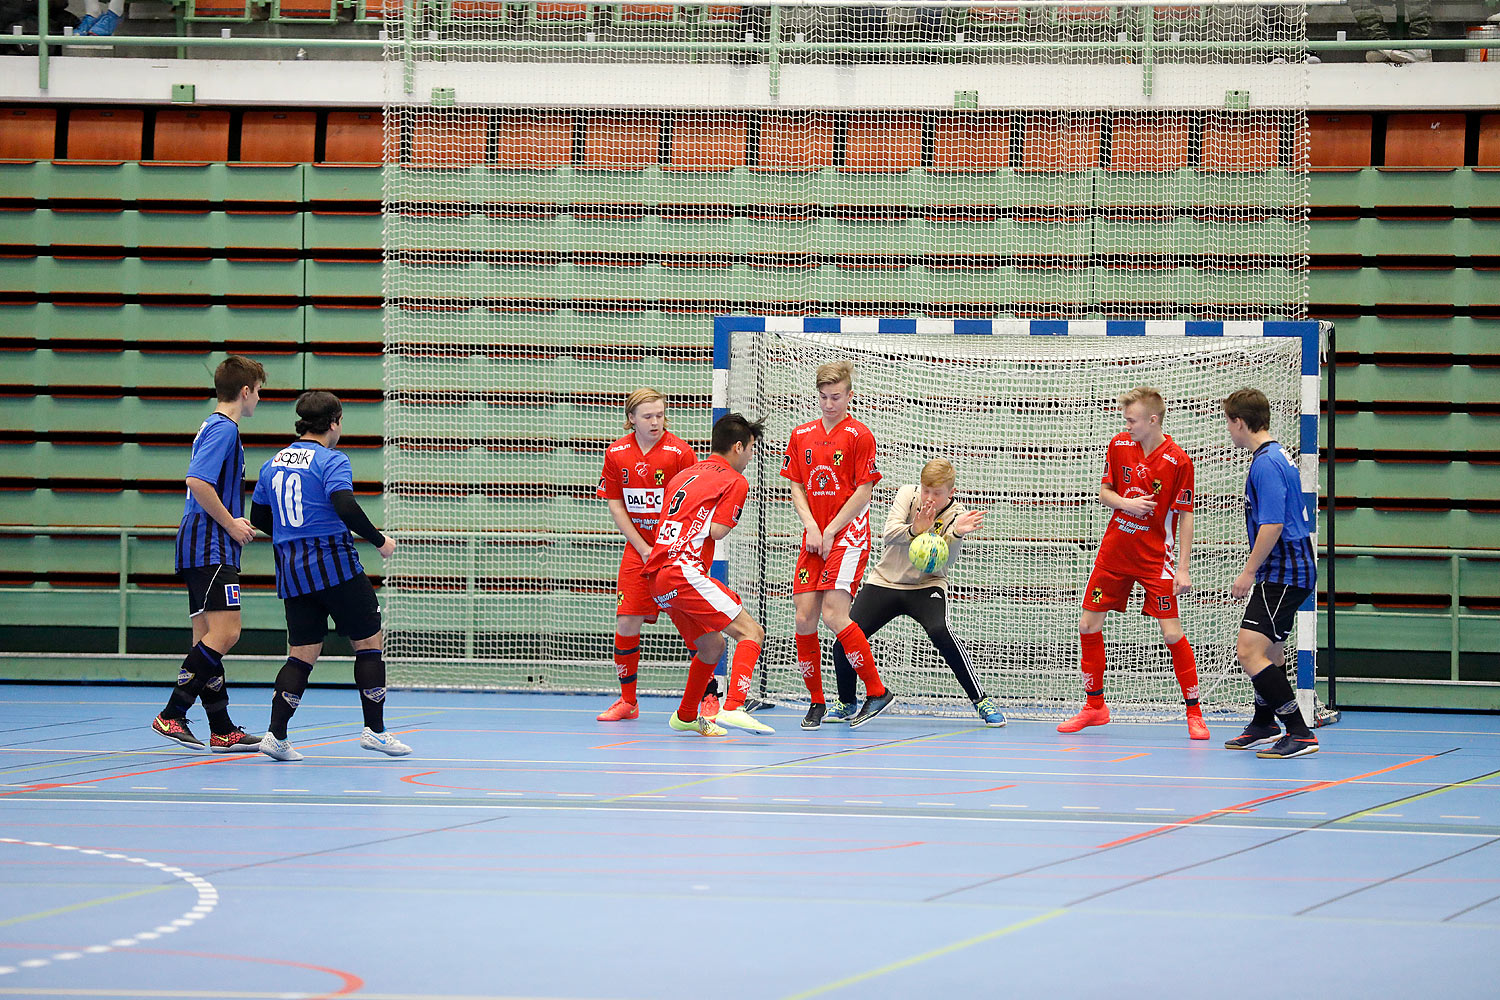 Skövde Futsalcup Herrjuniorer Ulricehamns IFK-Töreboda IK,herr,Arena Skövde,Skövde,Sverige,Skövde Futsalcup 2016,Futsal,2016,141925